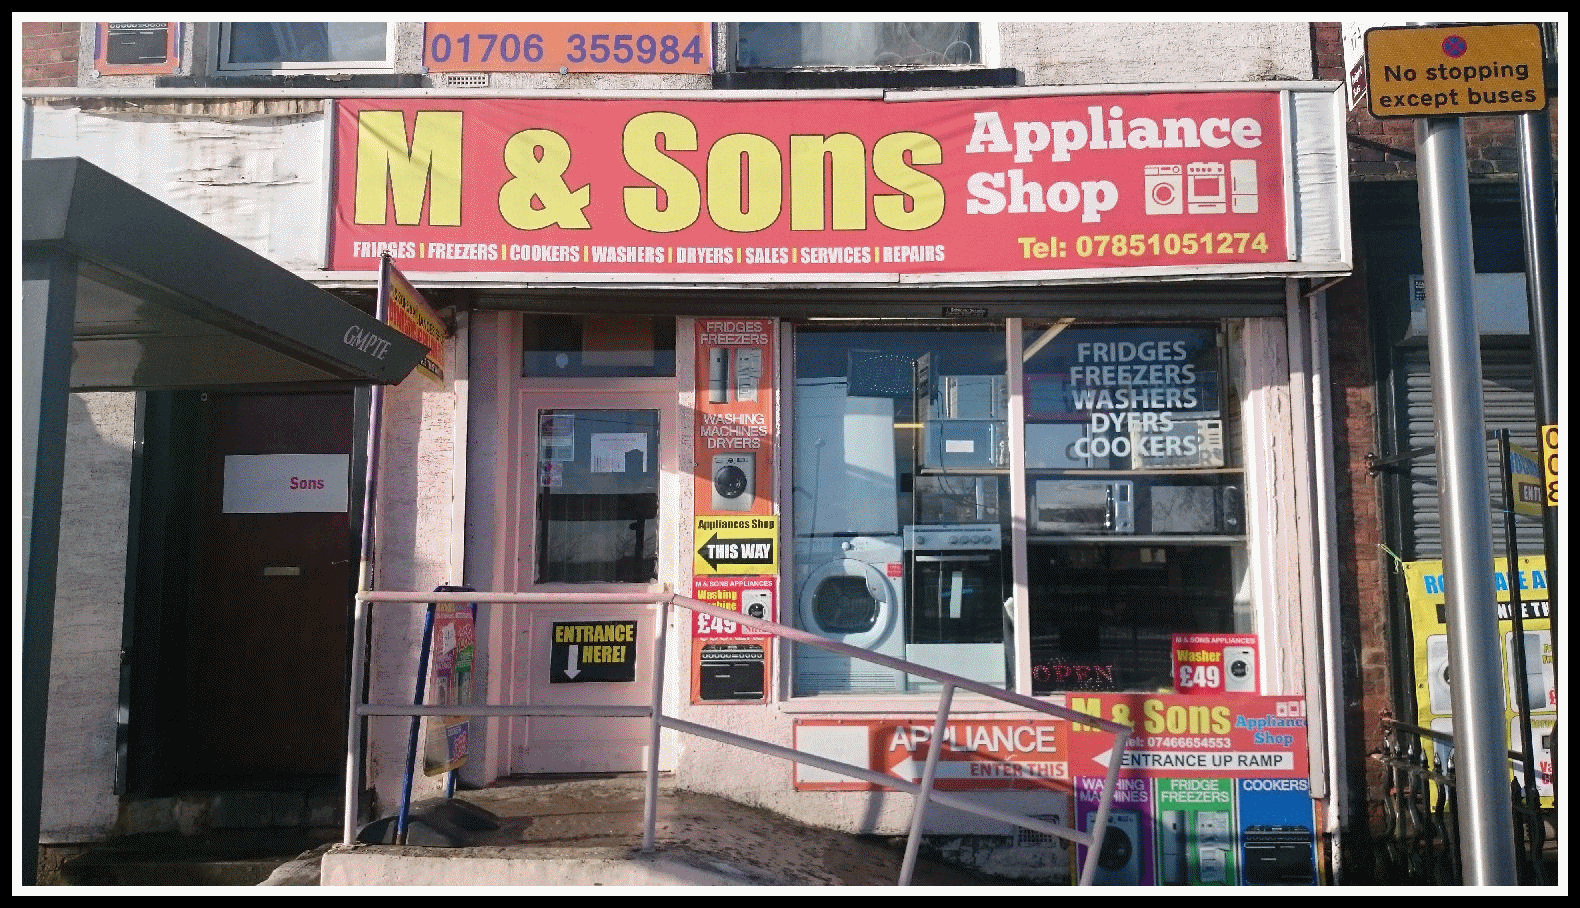 M & Sons Appliances Shop, 130 Drake Street, Bolton, OL16 1PN